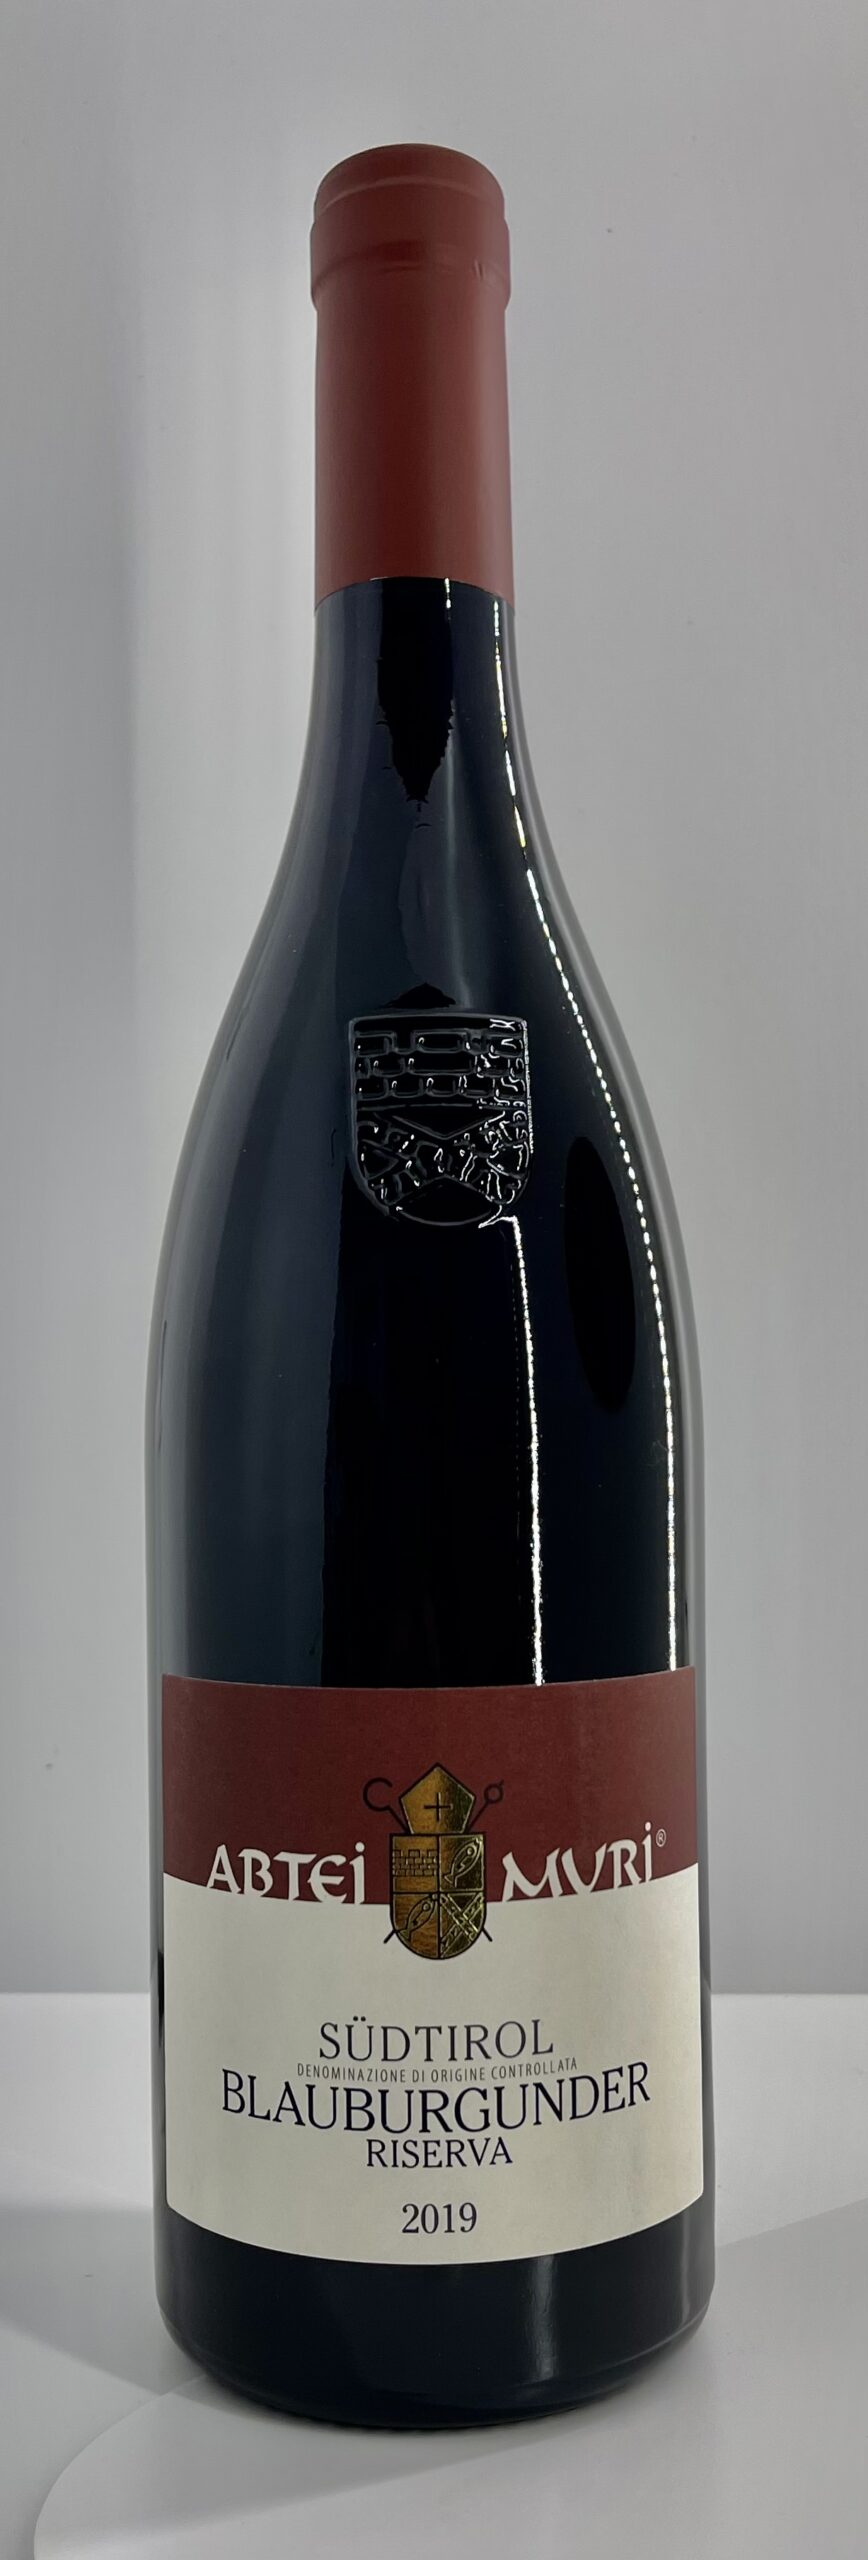 Pinot Nero Riserva, DOC (Blauburgunder)